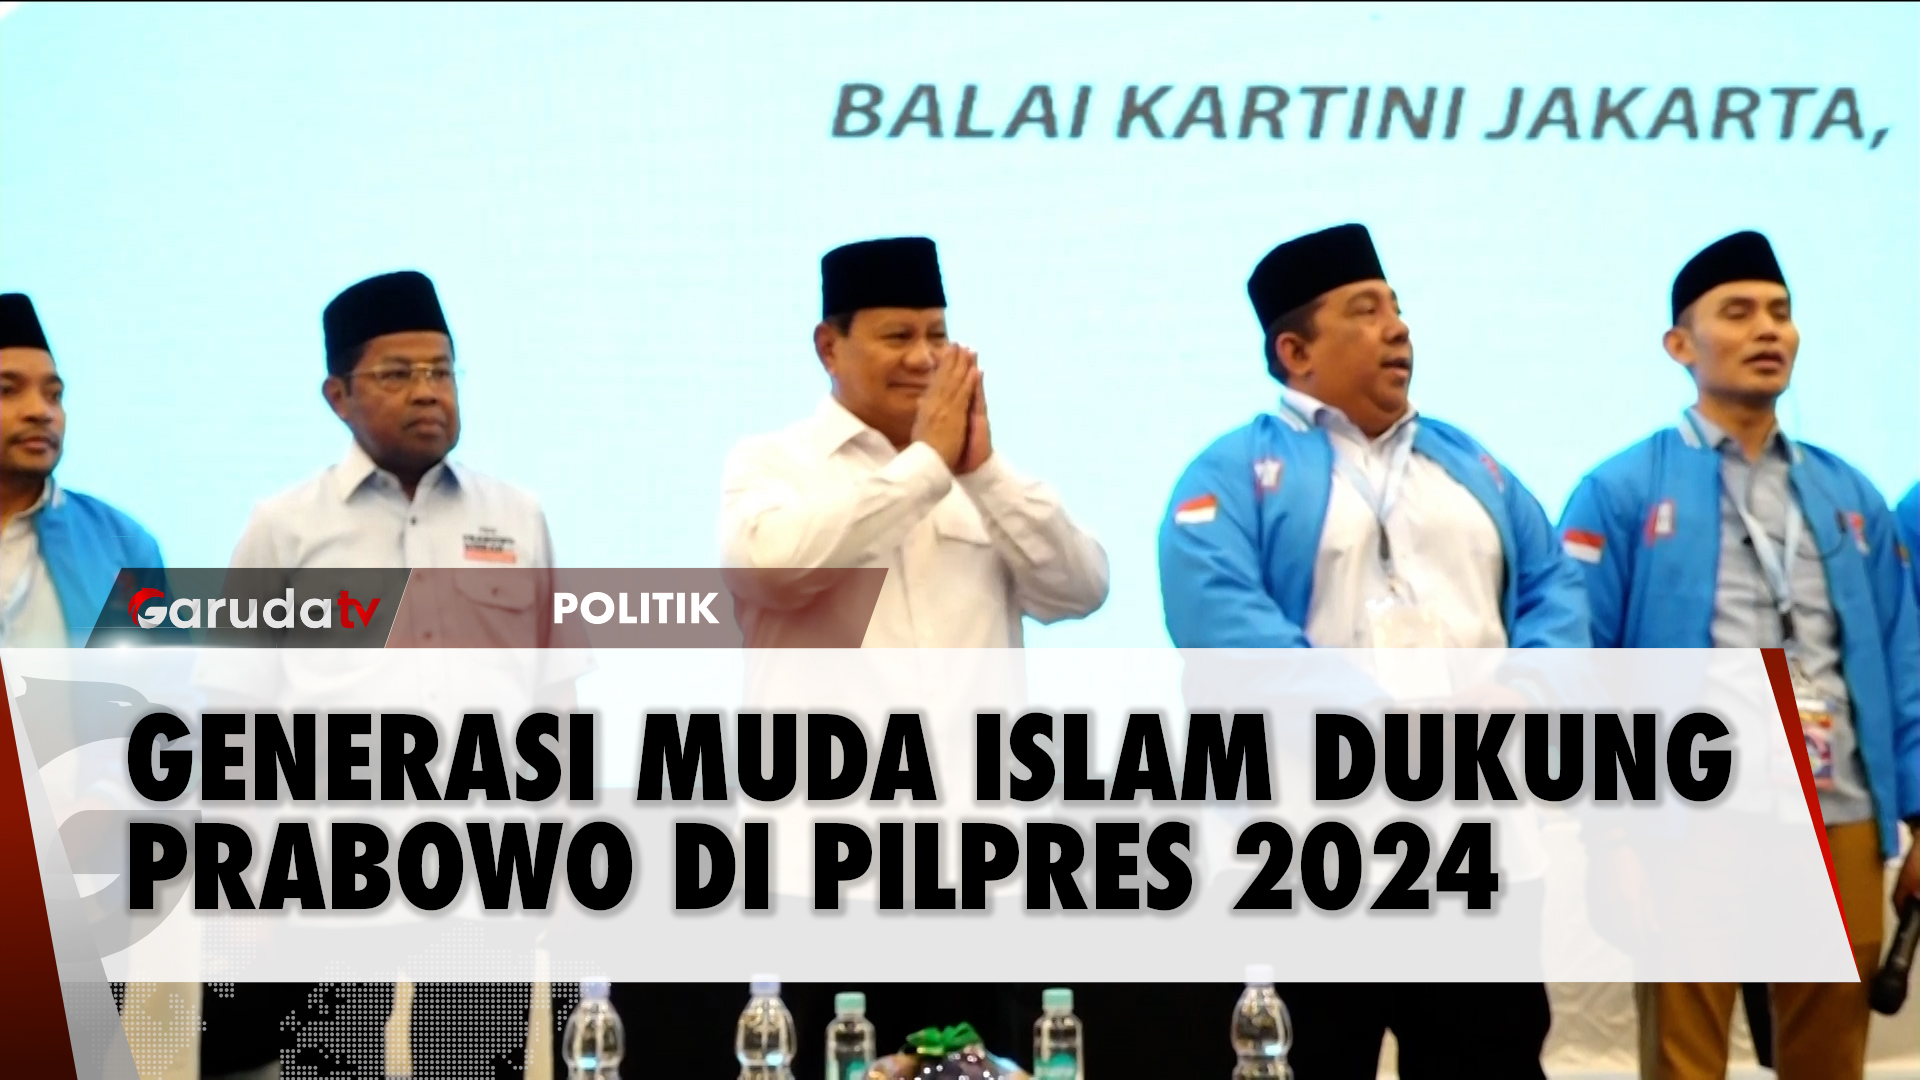 Relawan Generasi Muda Islam Deklarasi Dukungan untuk Prabowo - Gibran